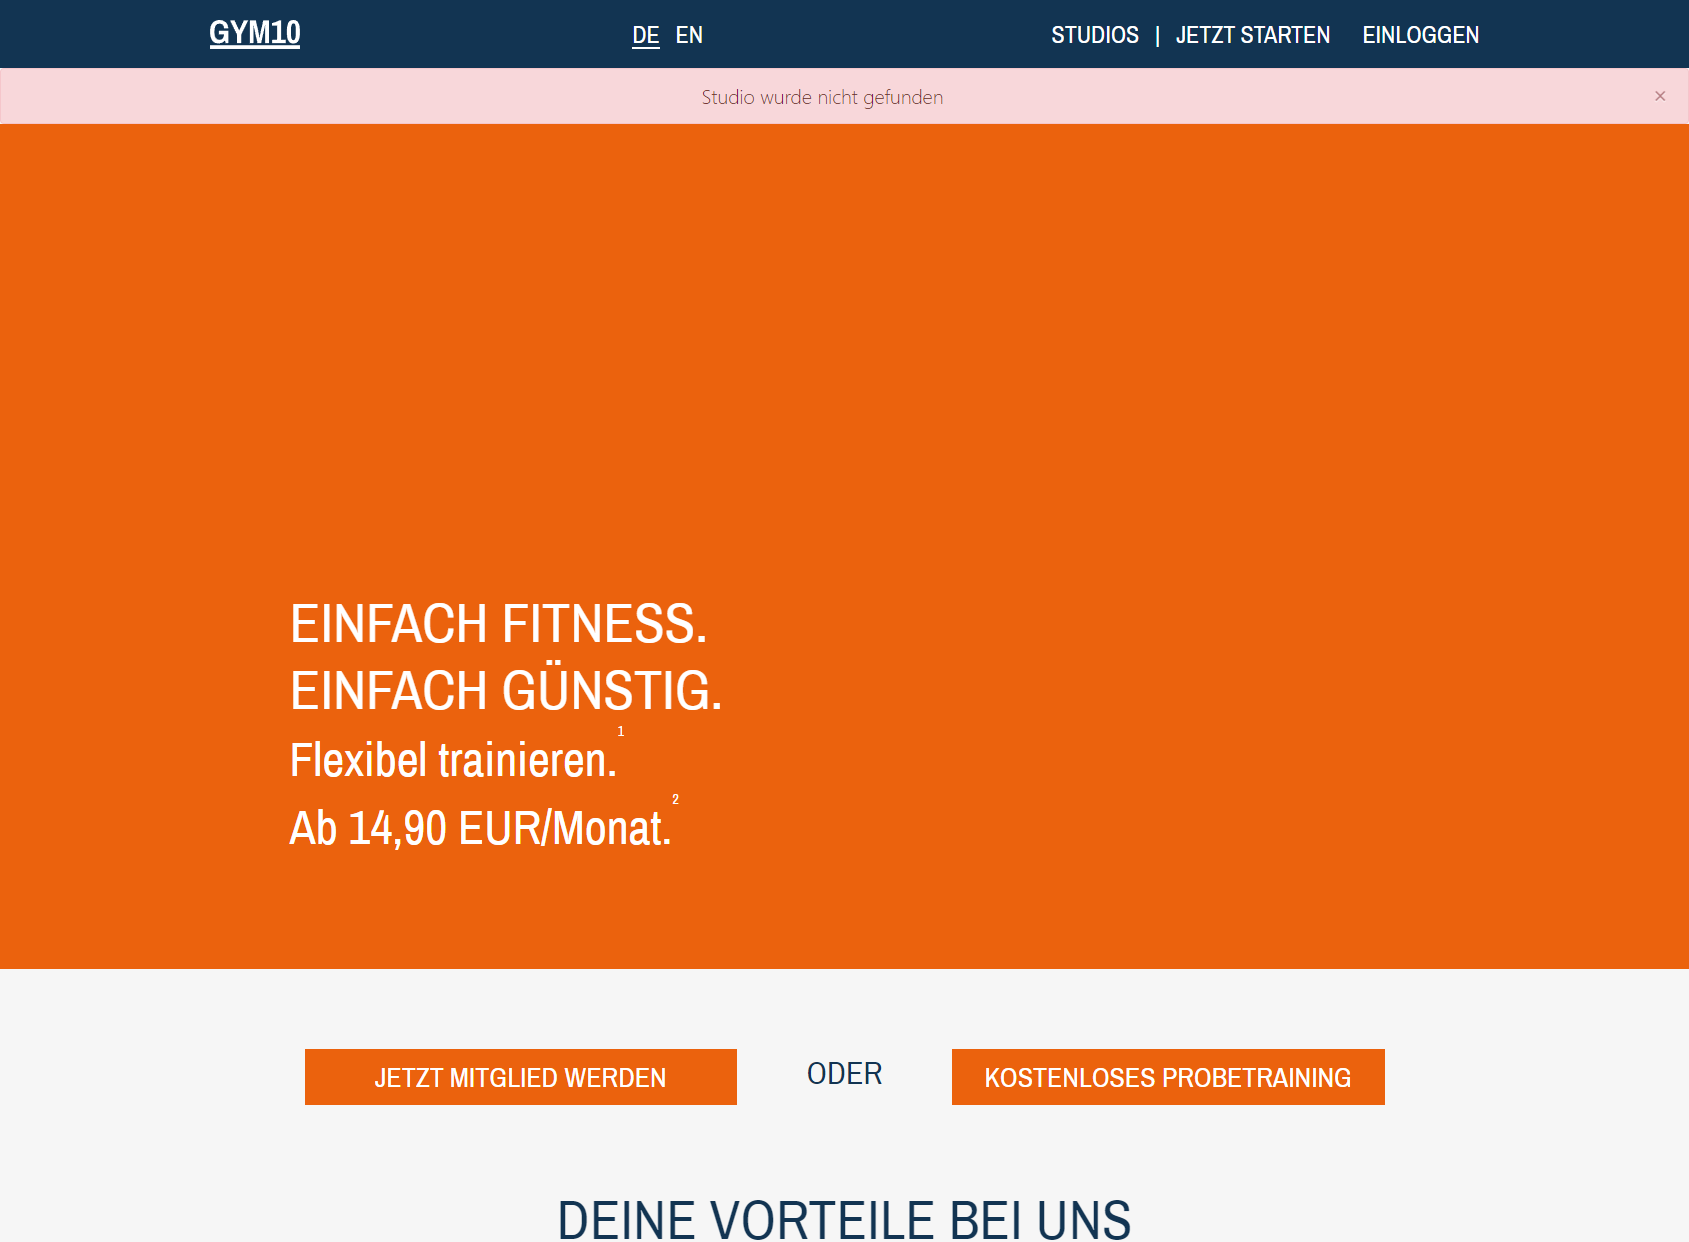 GYM10 Halle (Saale) - Fitness ab 14,90 EUR/Monat